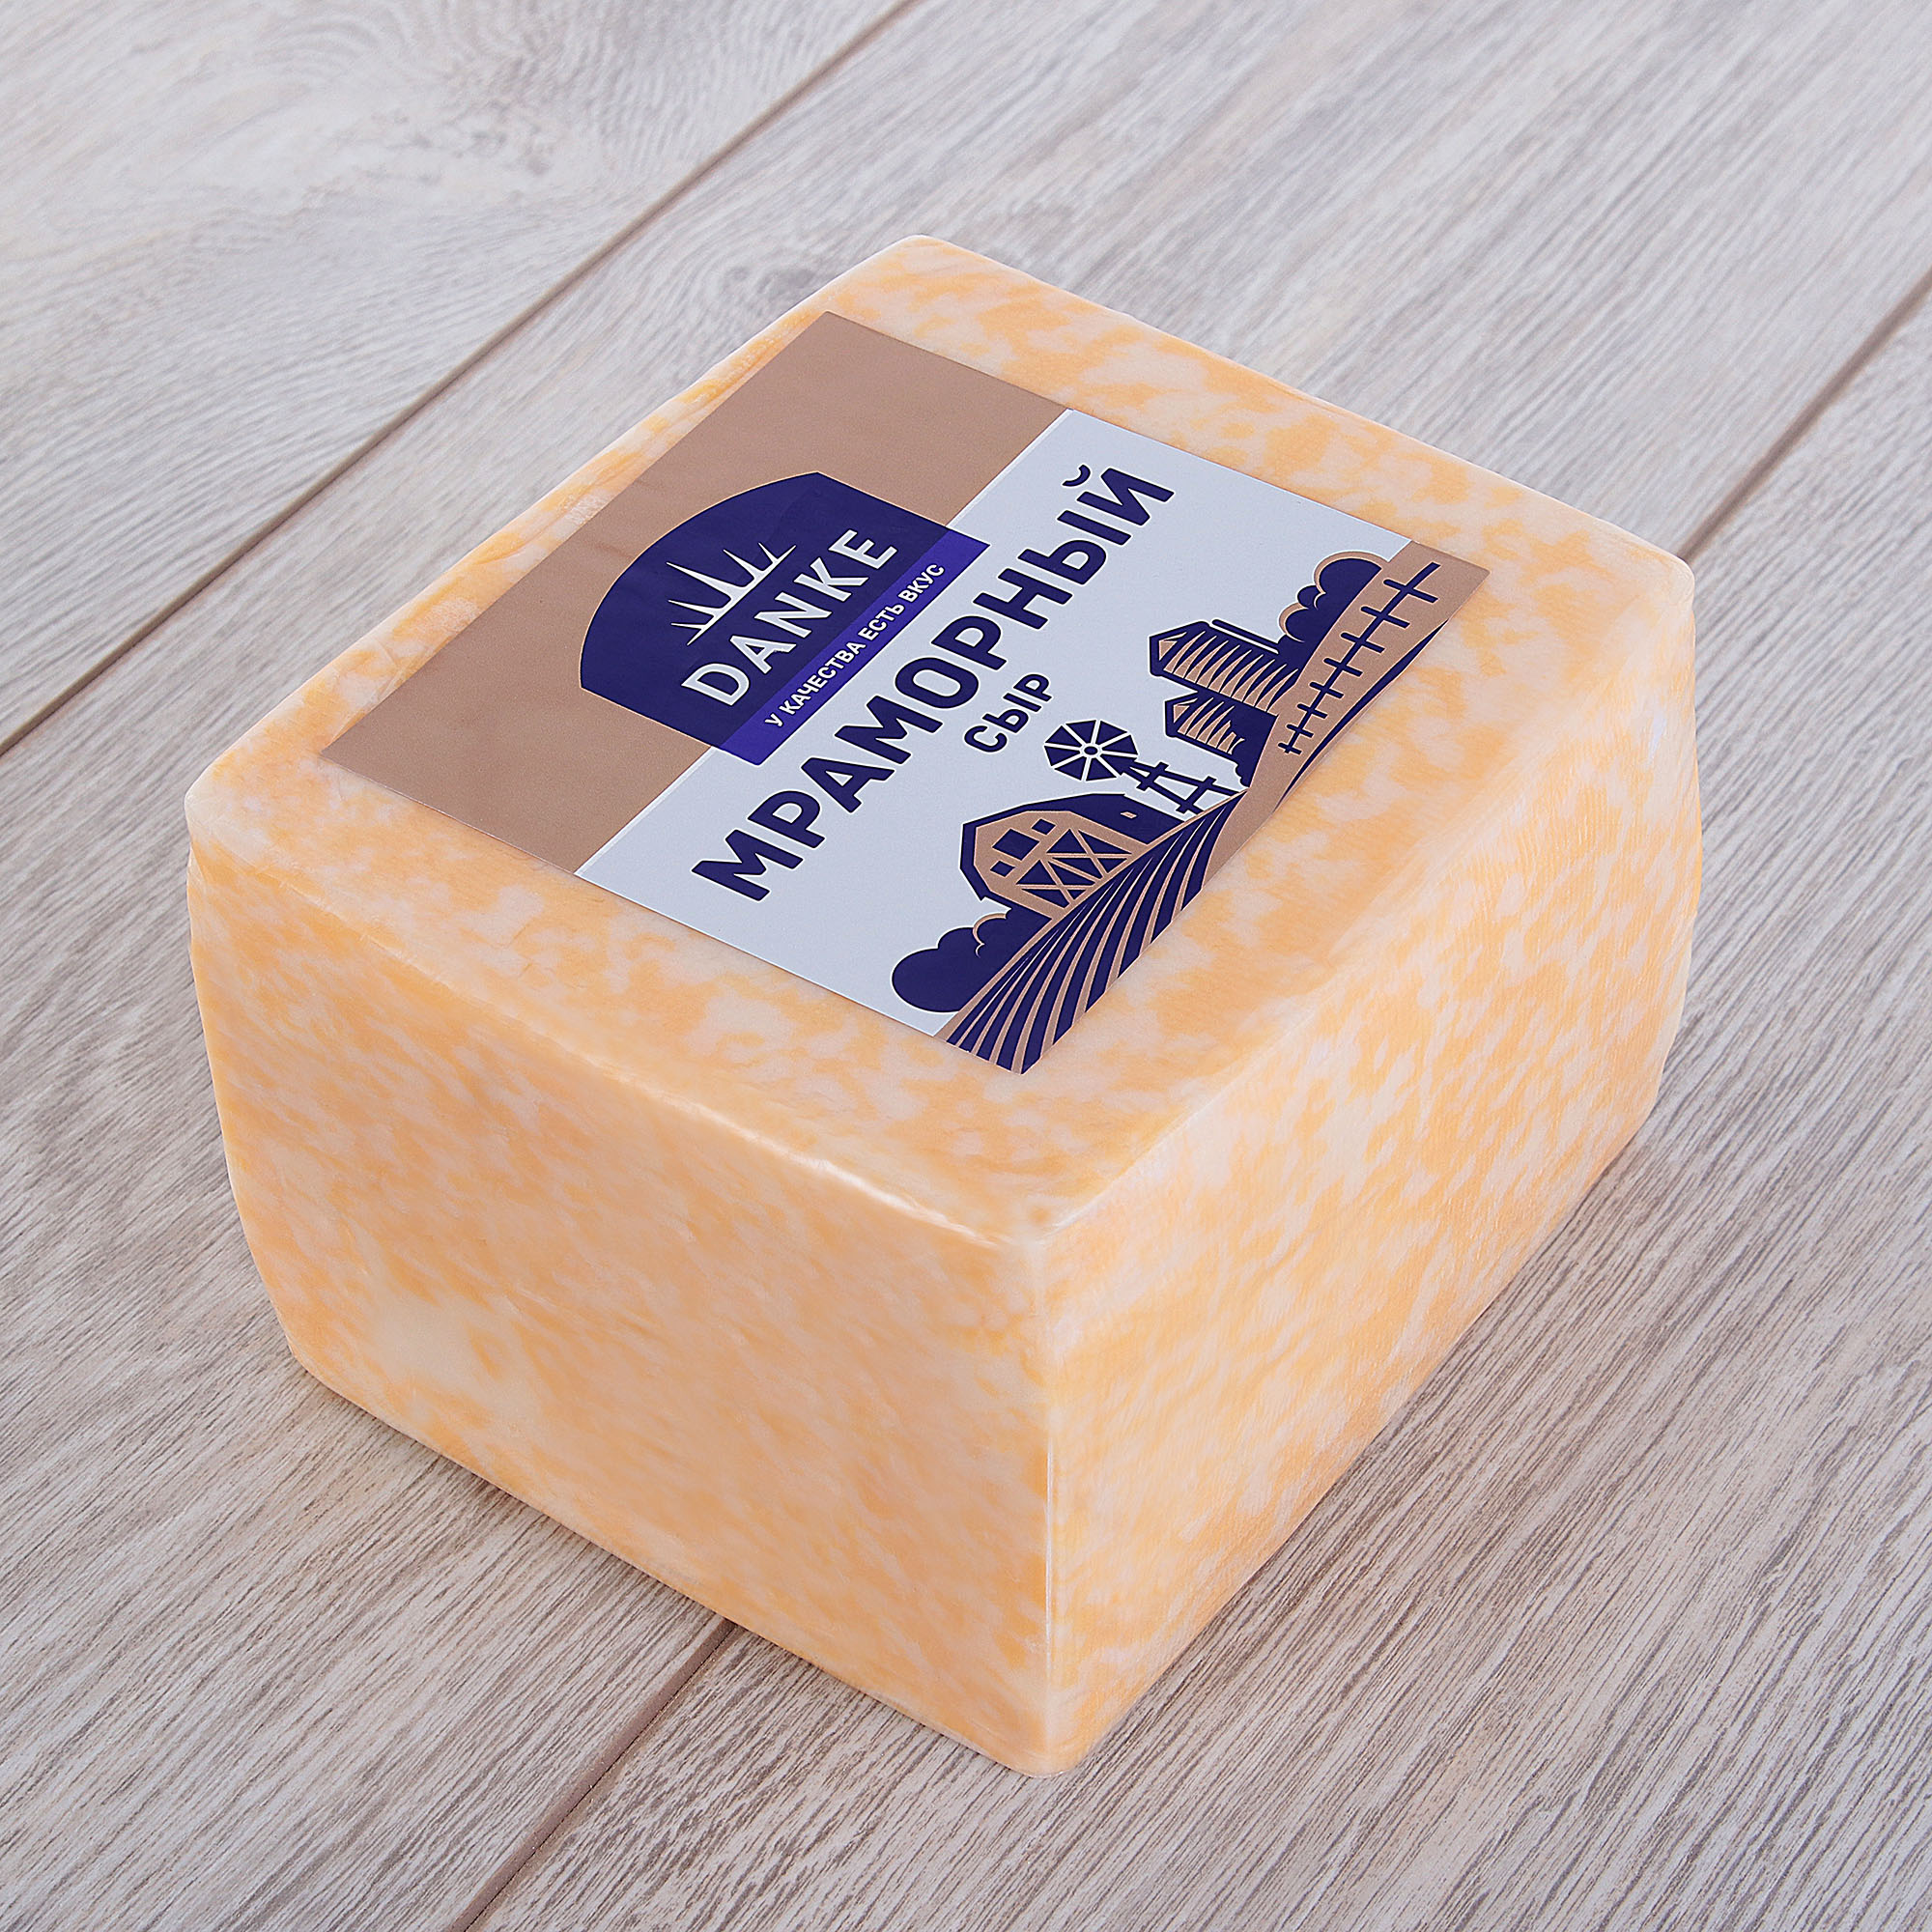 Сыр мраморный Danke 45% кг